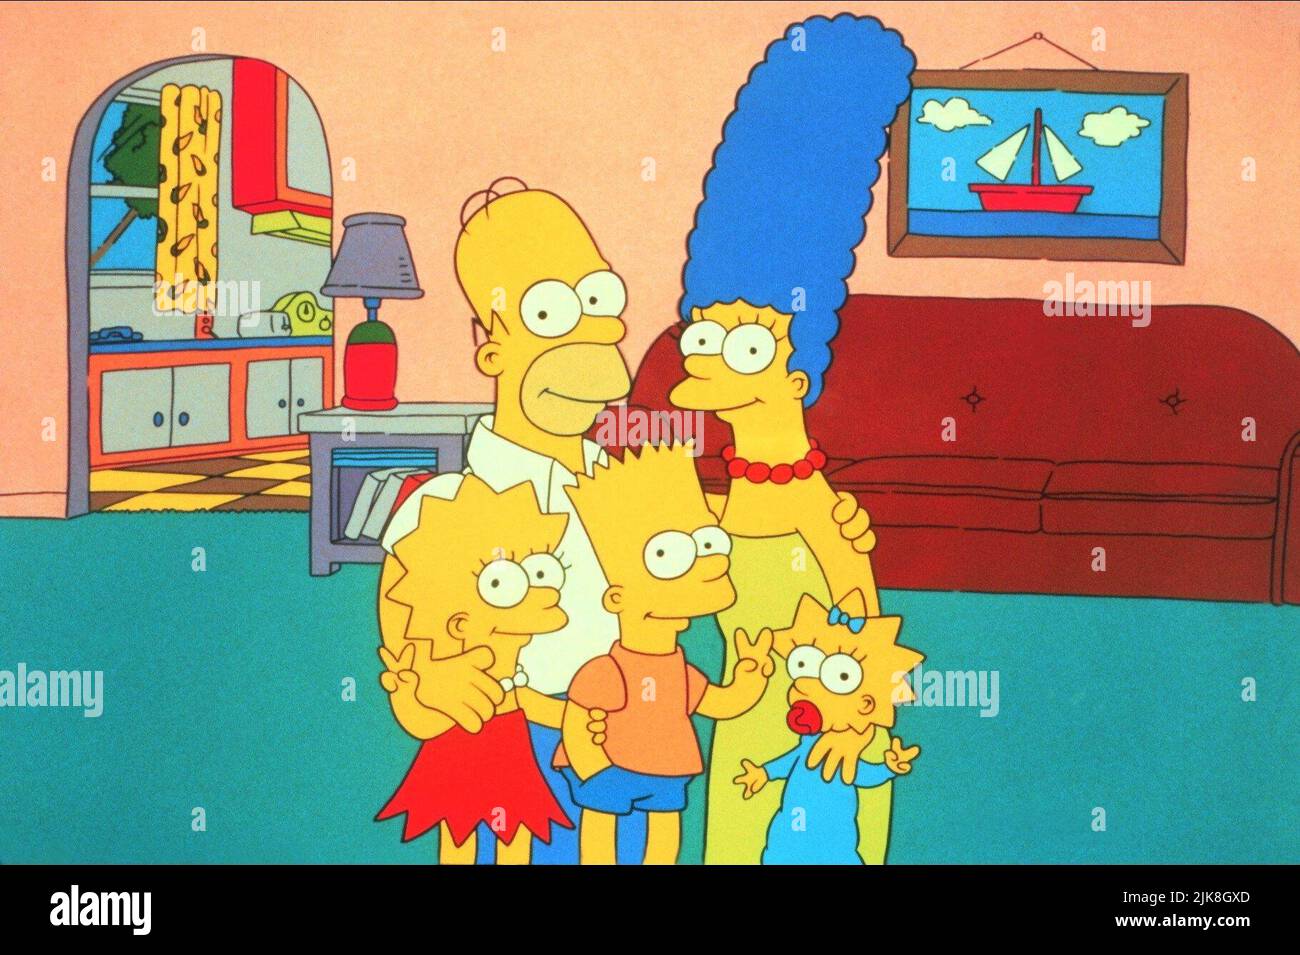 Lisa, Homer, Bart, Marge & Maggie Simpson Television: The Simpsons : Season 3 (TV-Serie) USA 1989-, / 3. Staffel, Saison 3 19. September 1991 **WARNUNG** Dieses Foto ist nur für redaktionelle Verwendung bestimmt und unterliegt dem Copyright des FERNSEHENS 20. CENTURY FOX und/oder des Fotografen, der von der Film- oder Produktionsfirma beauftragt wurde, und kann nur durch Publikationen im Zusammenhang mit der Bewerbung des oben genannten Films reproduziert werden. Eine obligatorische Gutschrift für DAS FERNSEHEN VON 20. CENTURY FOX ist erforderlich. Der Fotograf sollte auch bei Bekanntwerden des Fotos gutgeschrieben werden. Eine kommerzielle Nutzung kann ohne schriftliche Genehmigung des FI nicht gewährt werden Stockfoto